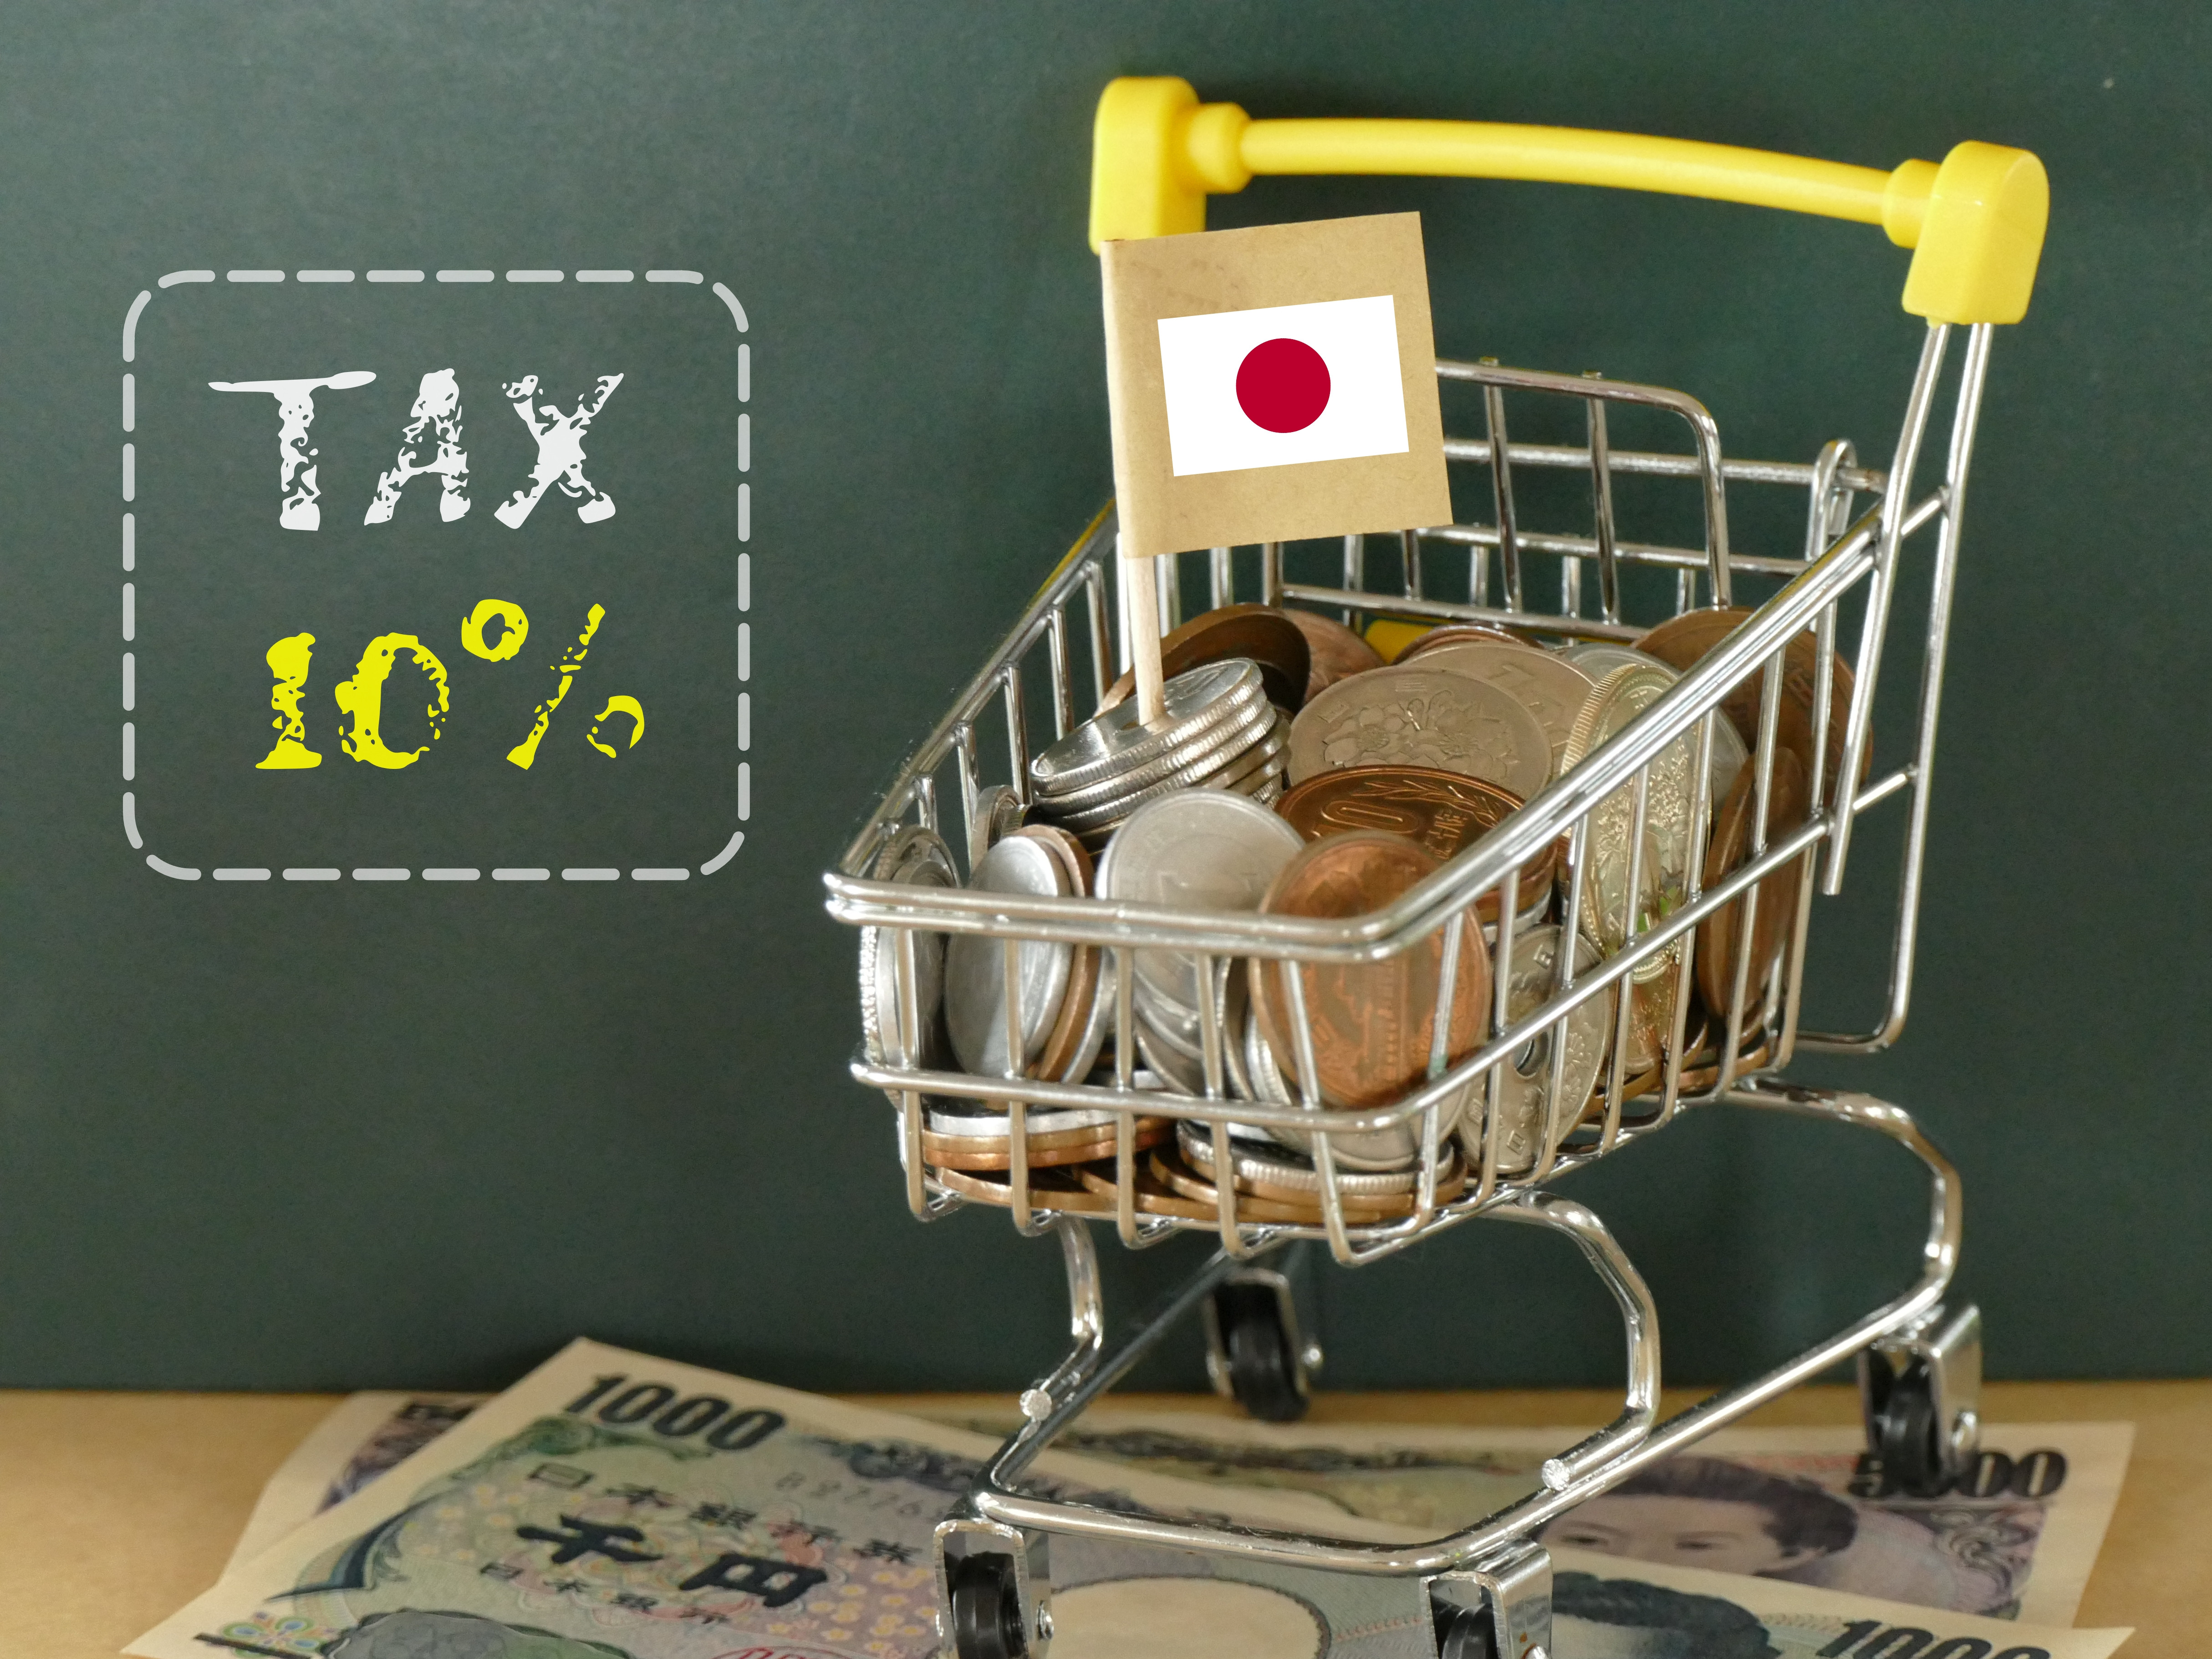 Japan: Mehrwertsteuererhöhung wird kein Konjunkturkiller